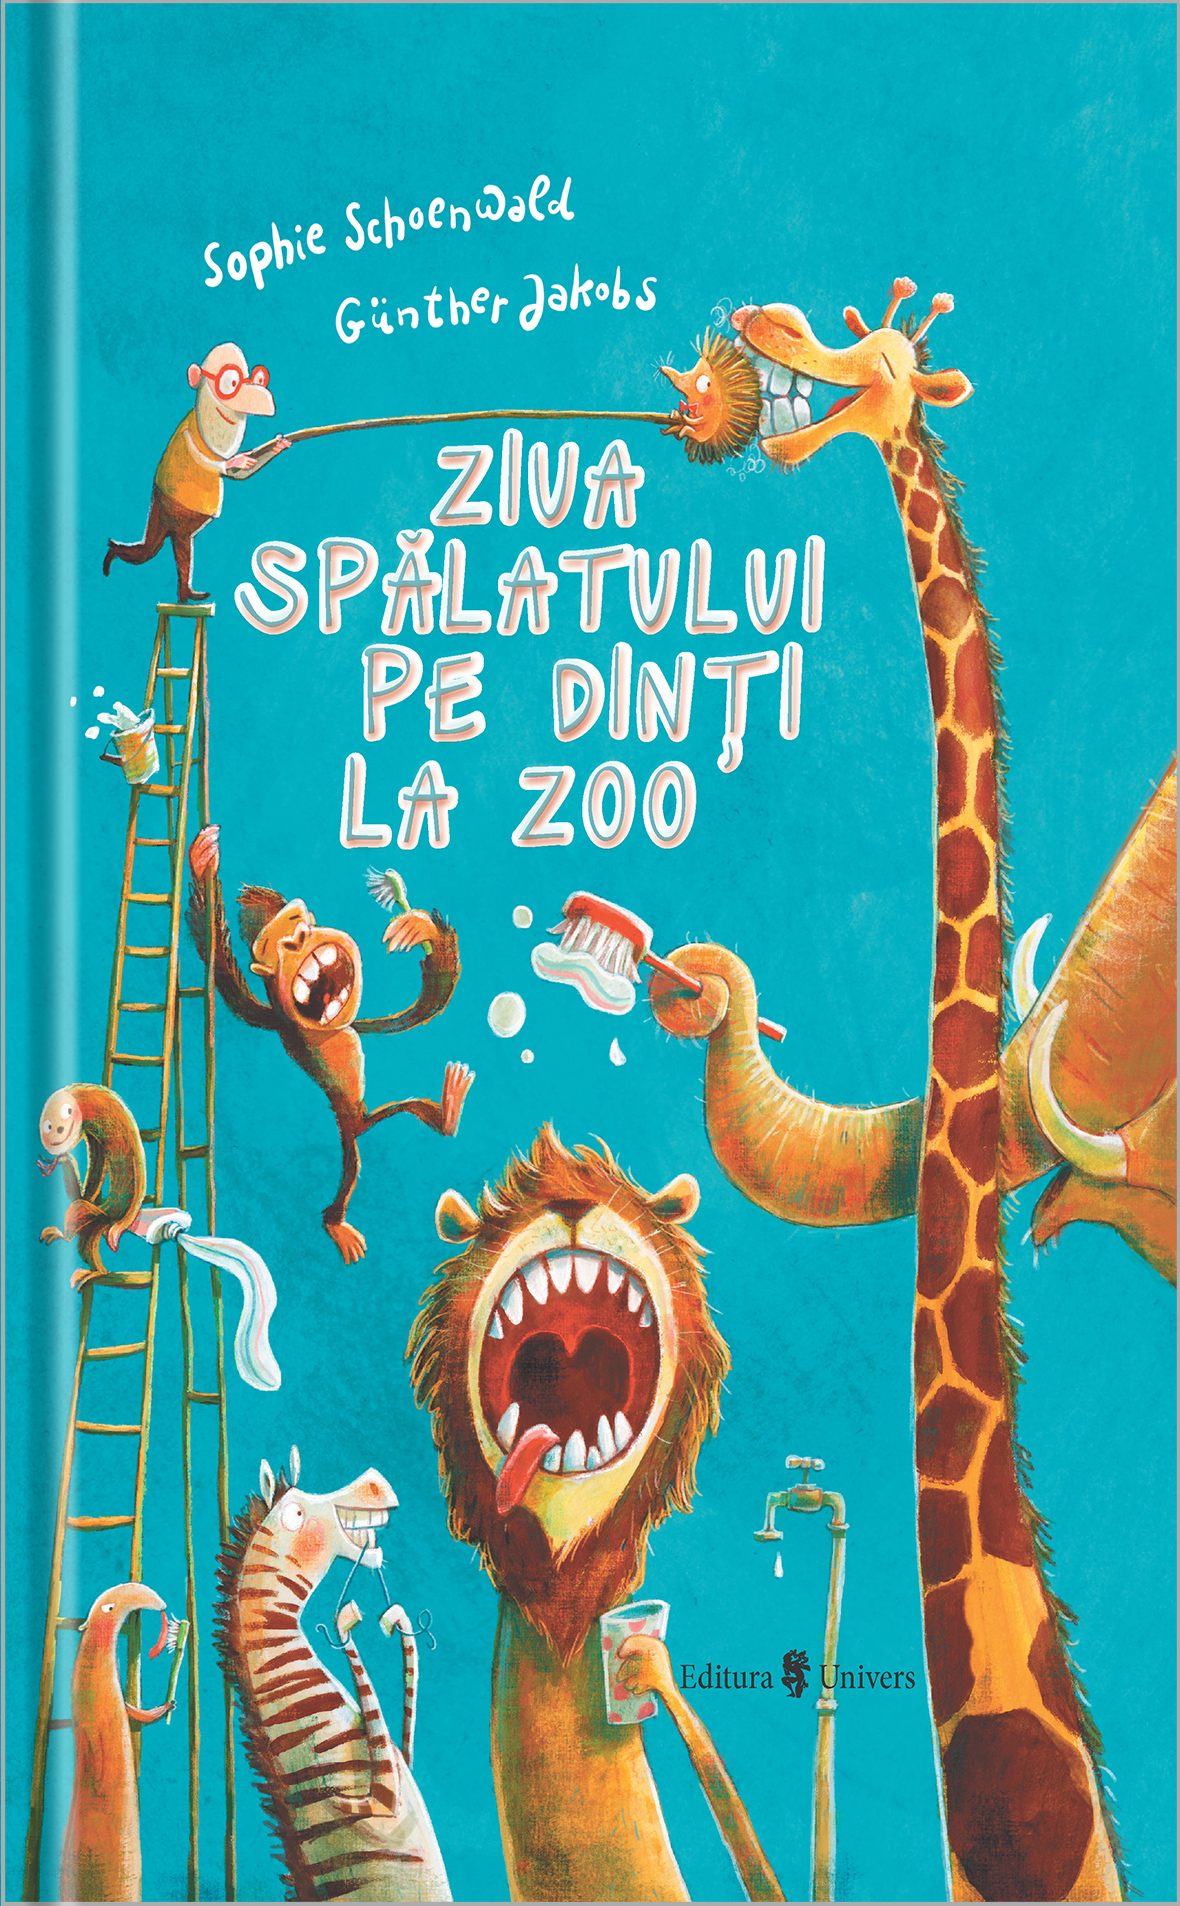 Ziua spalatului pe dinti la zoo | Sophie Schoenwald, Gunther Jakobs adolescenti